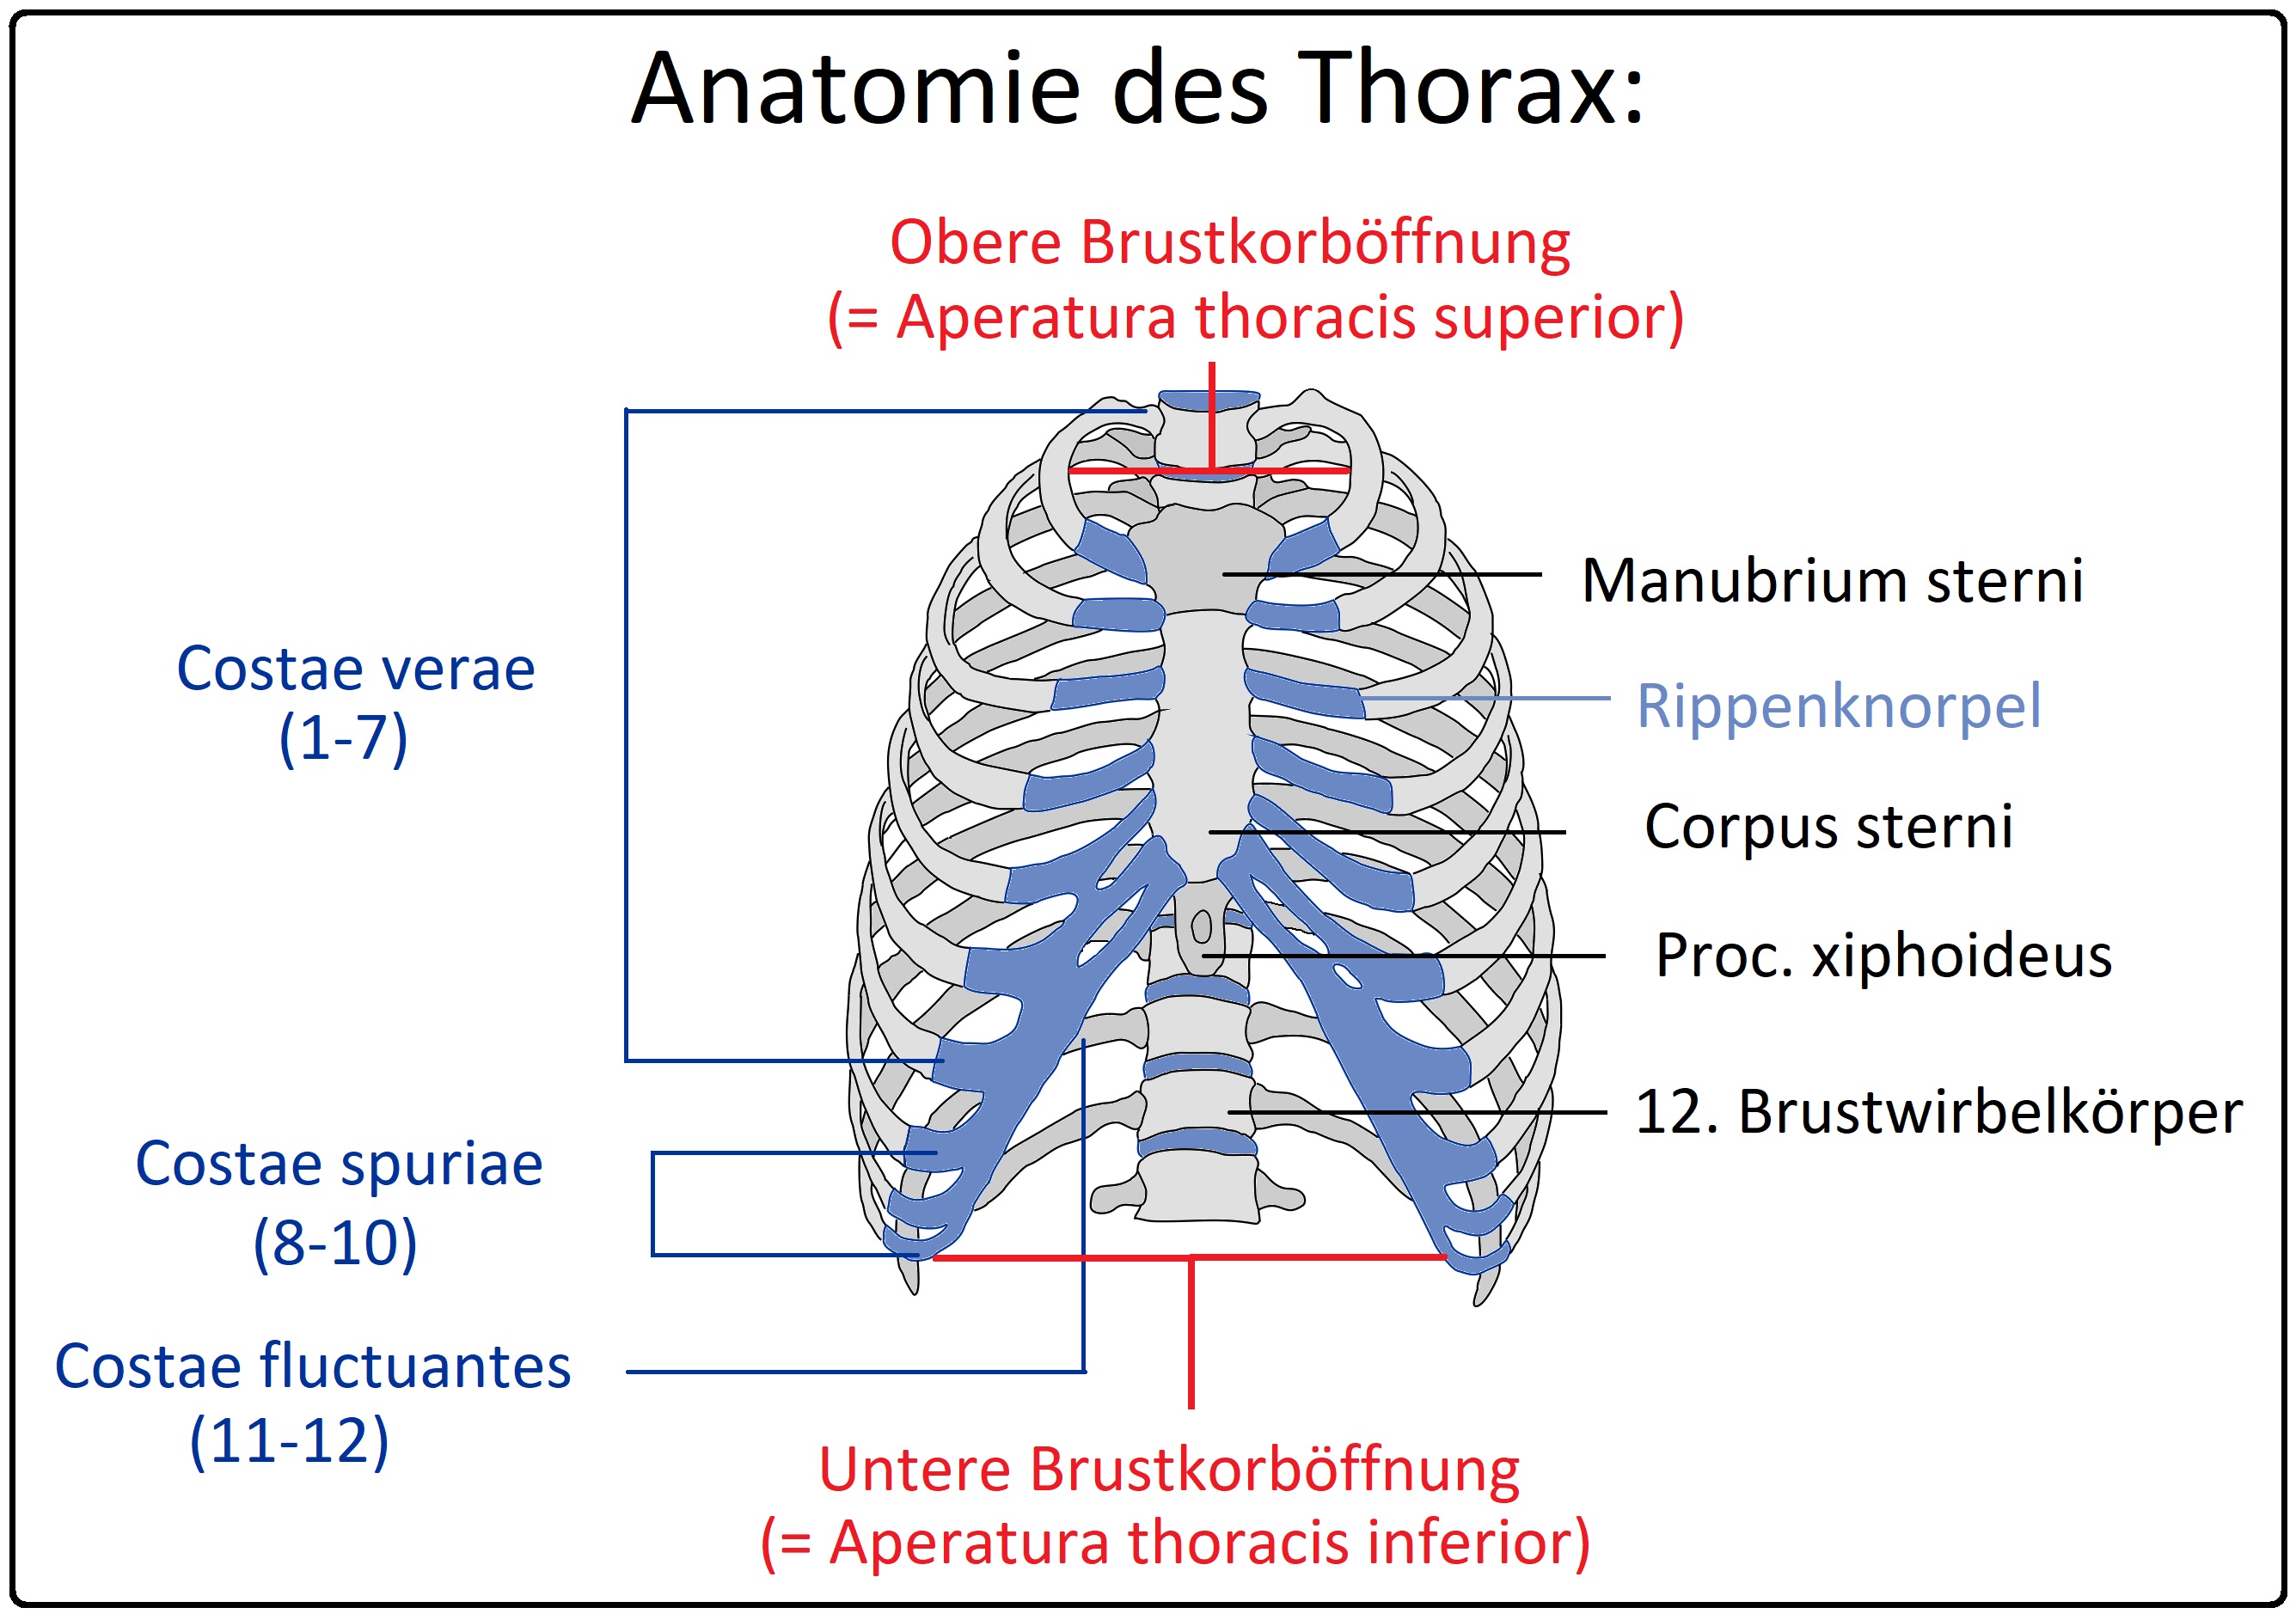 692 Anatomie des Thorax